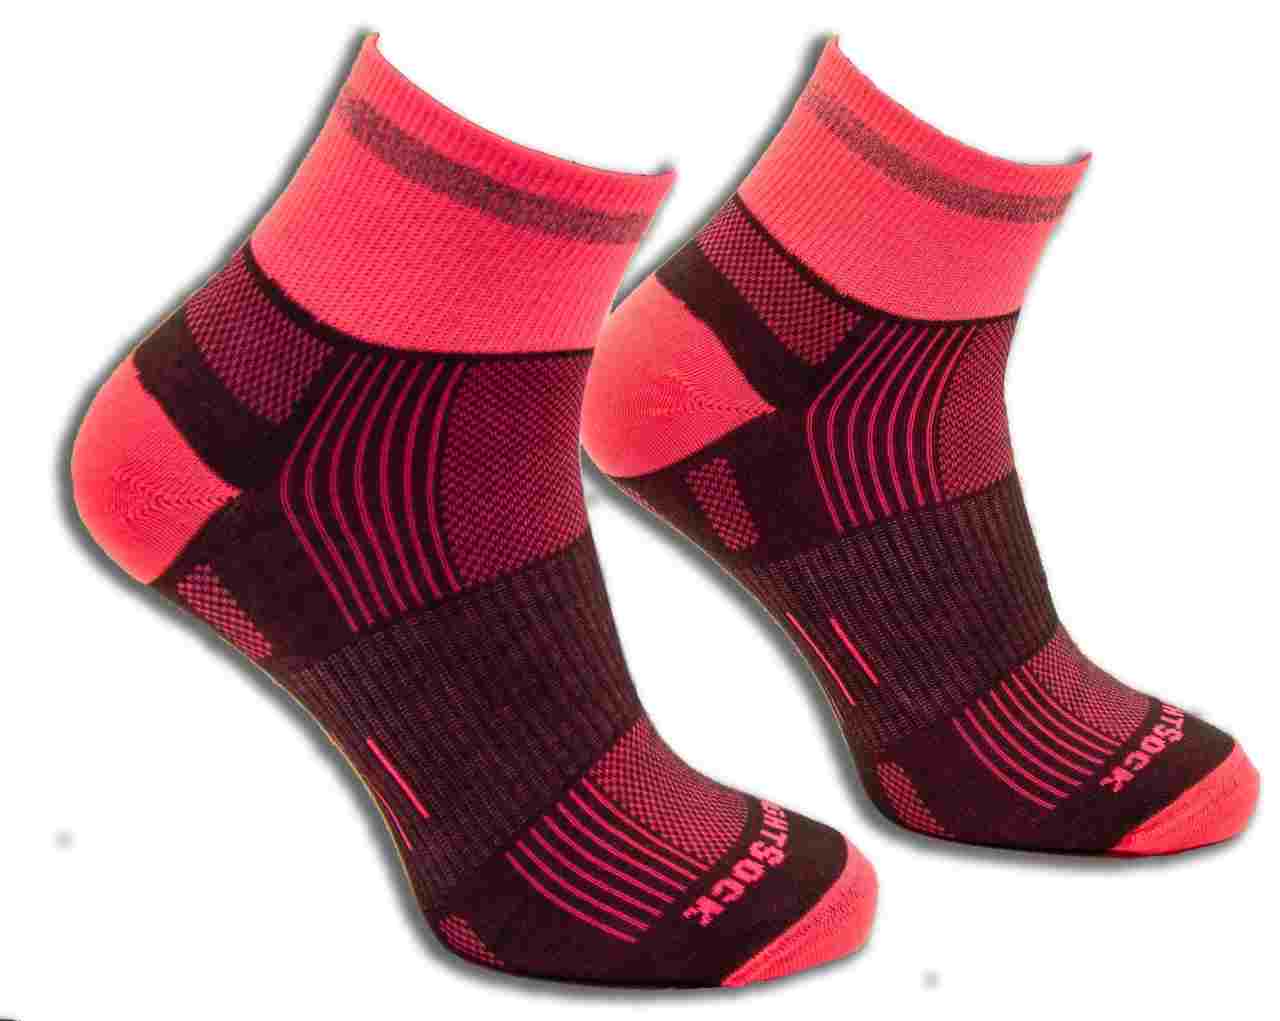 Run Reflective - Quarter Socks - Grey/Pink - Run Reflective Quarter Sock Grey/Pink